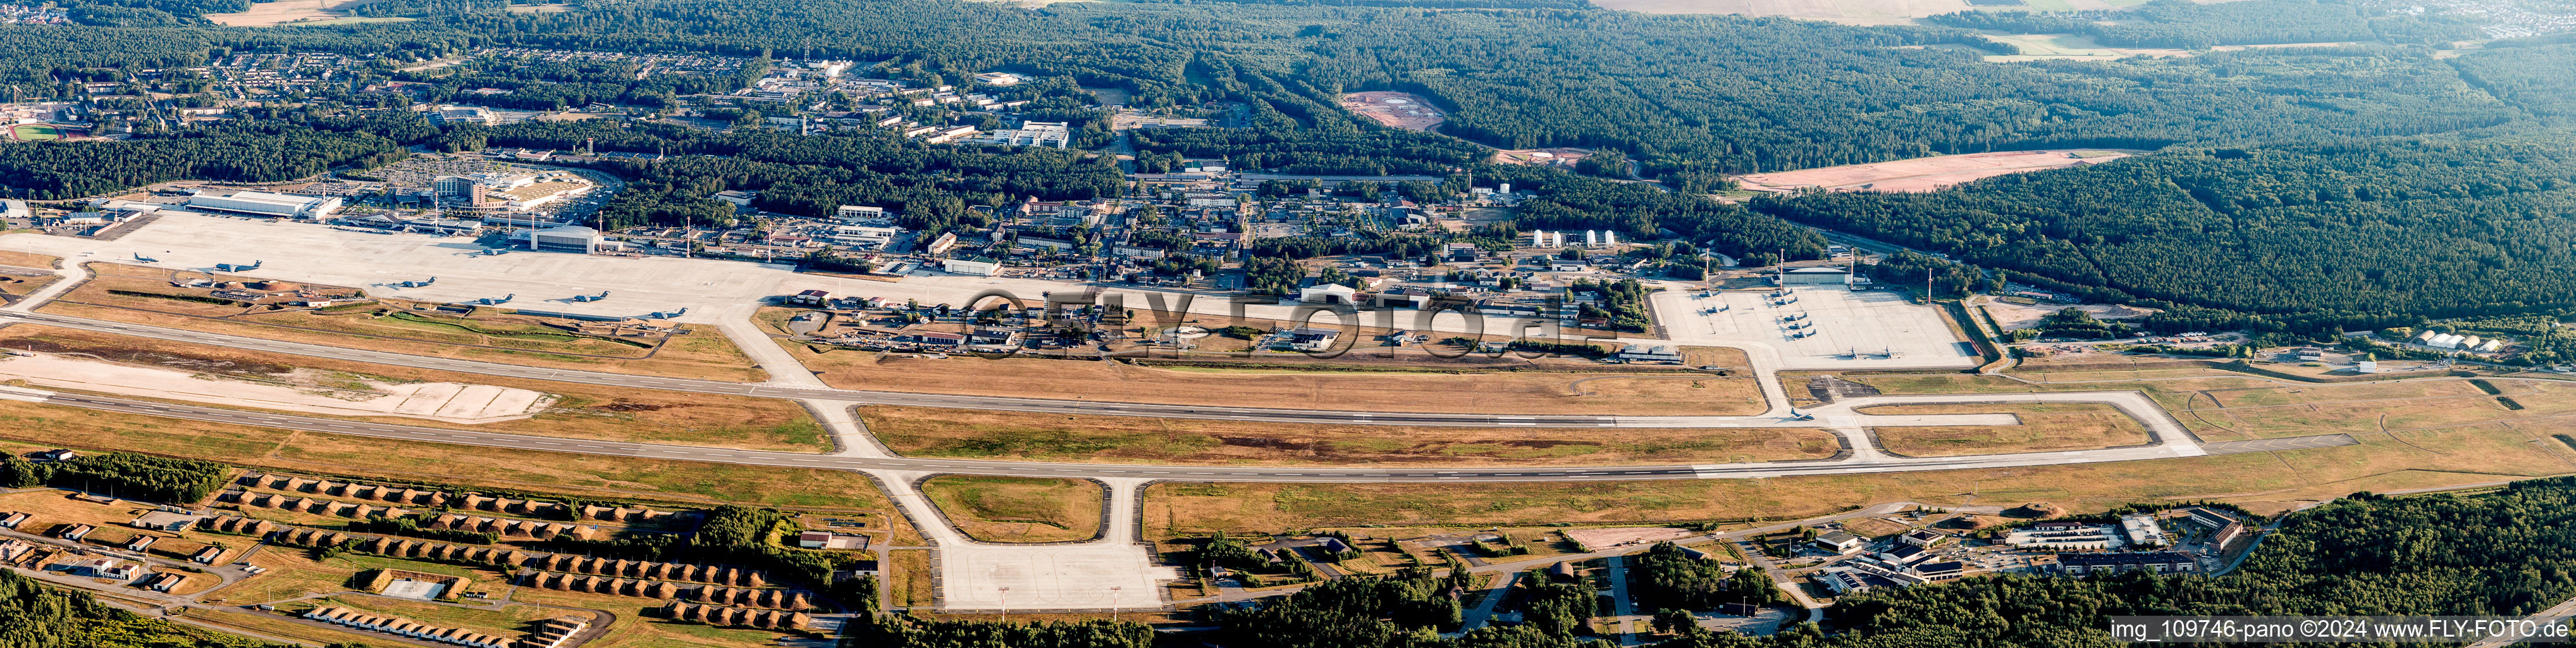 Vue aérienne de Base aérienne américaine panoramique à Ramstein dans le département Rhénanie-Palatinat, Allemagne